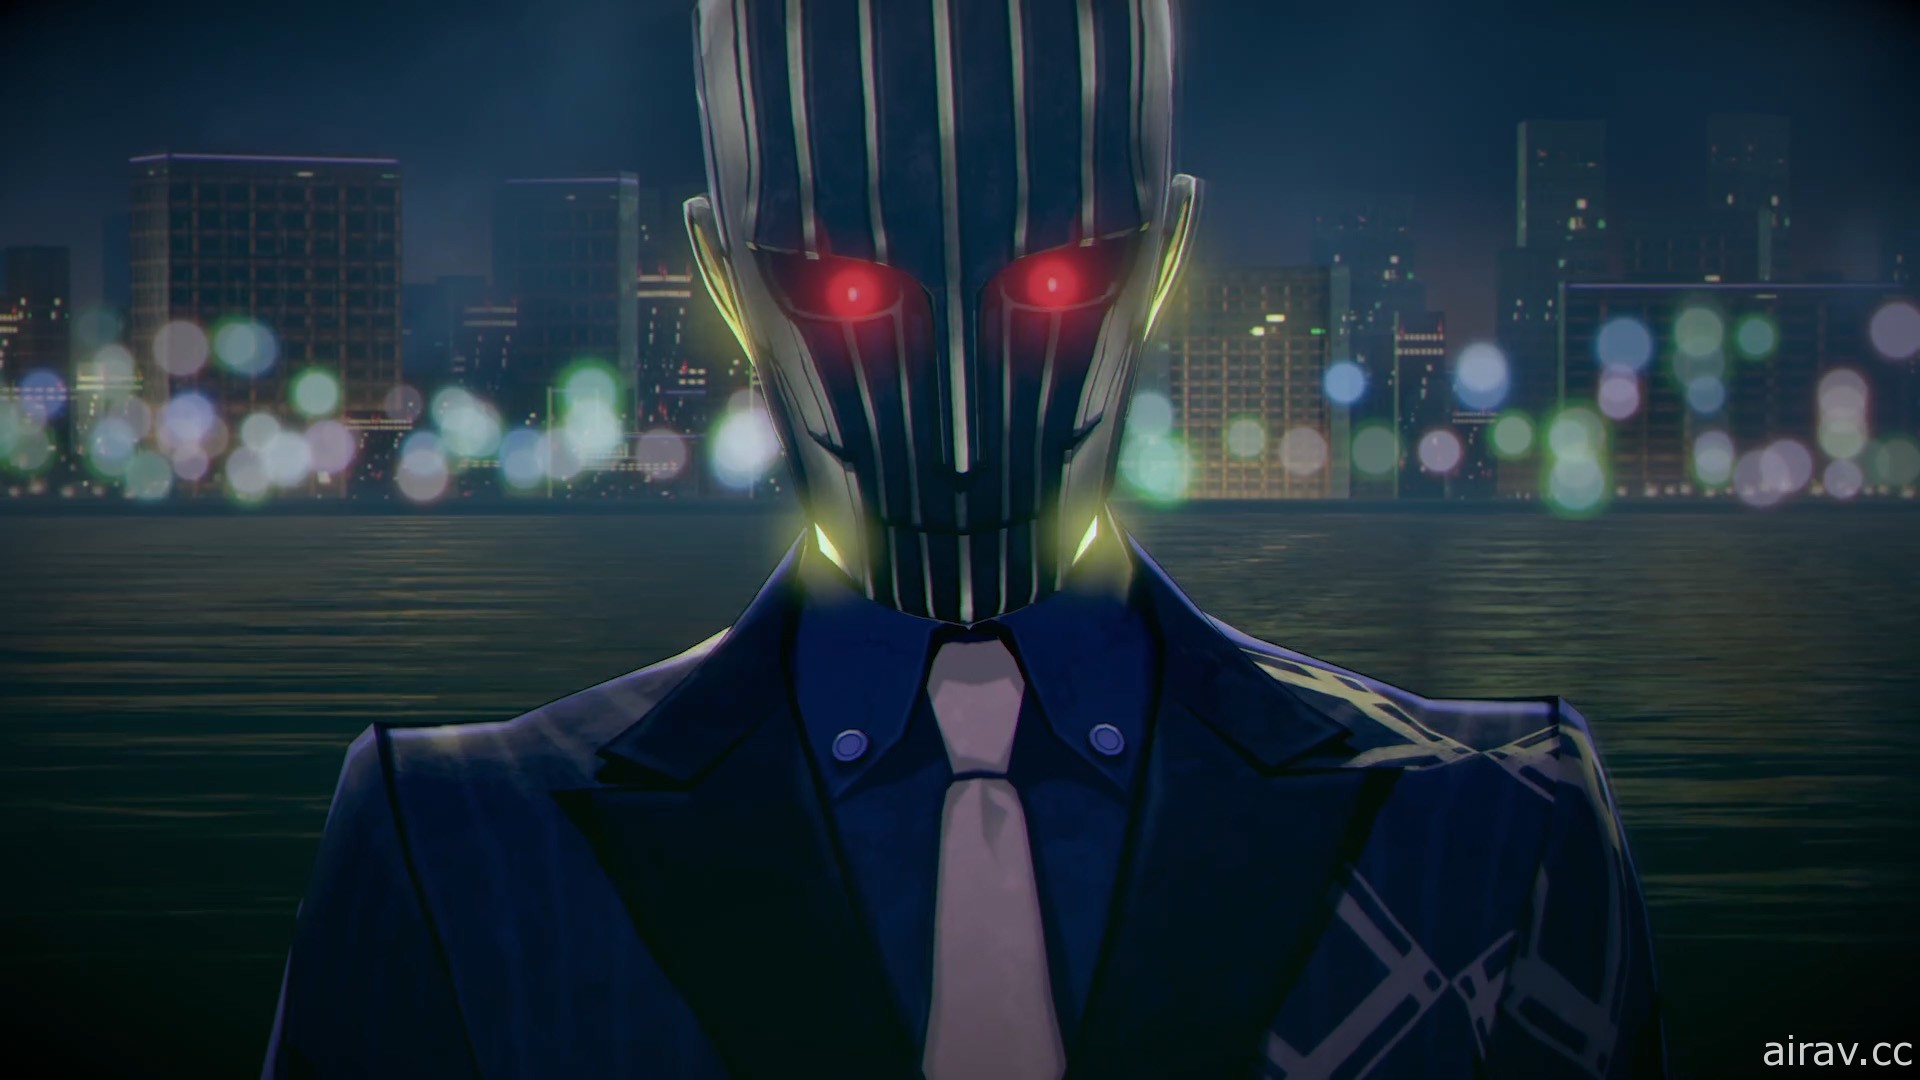 《灵魂骇客 2》揭晓后续 DLC 资讯 宣传影片第 3 弹公开